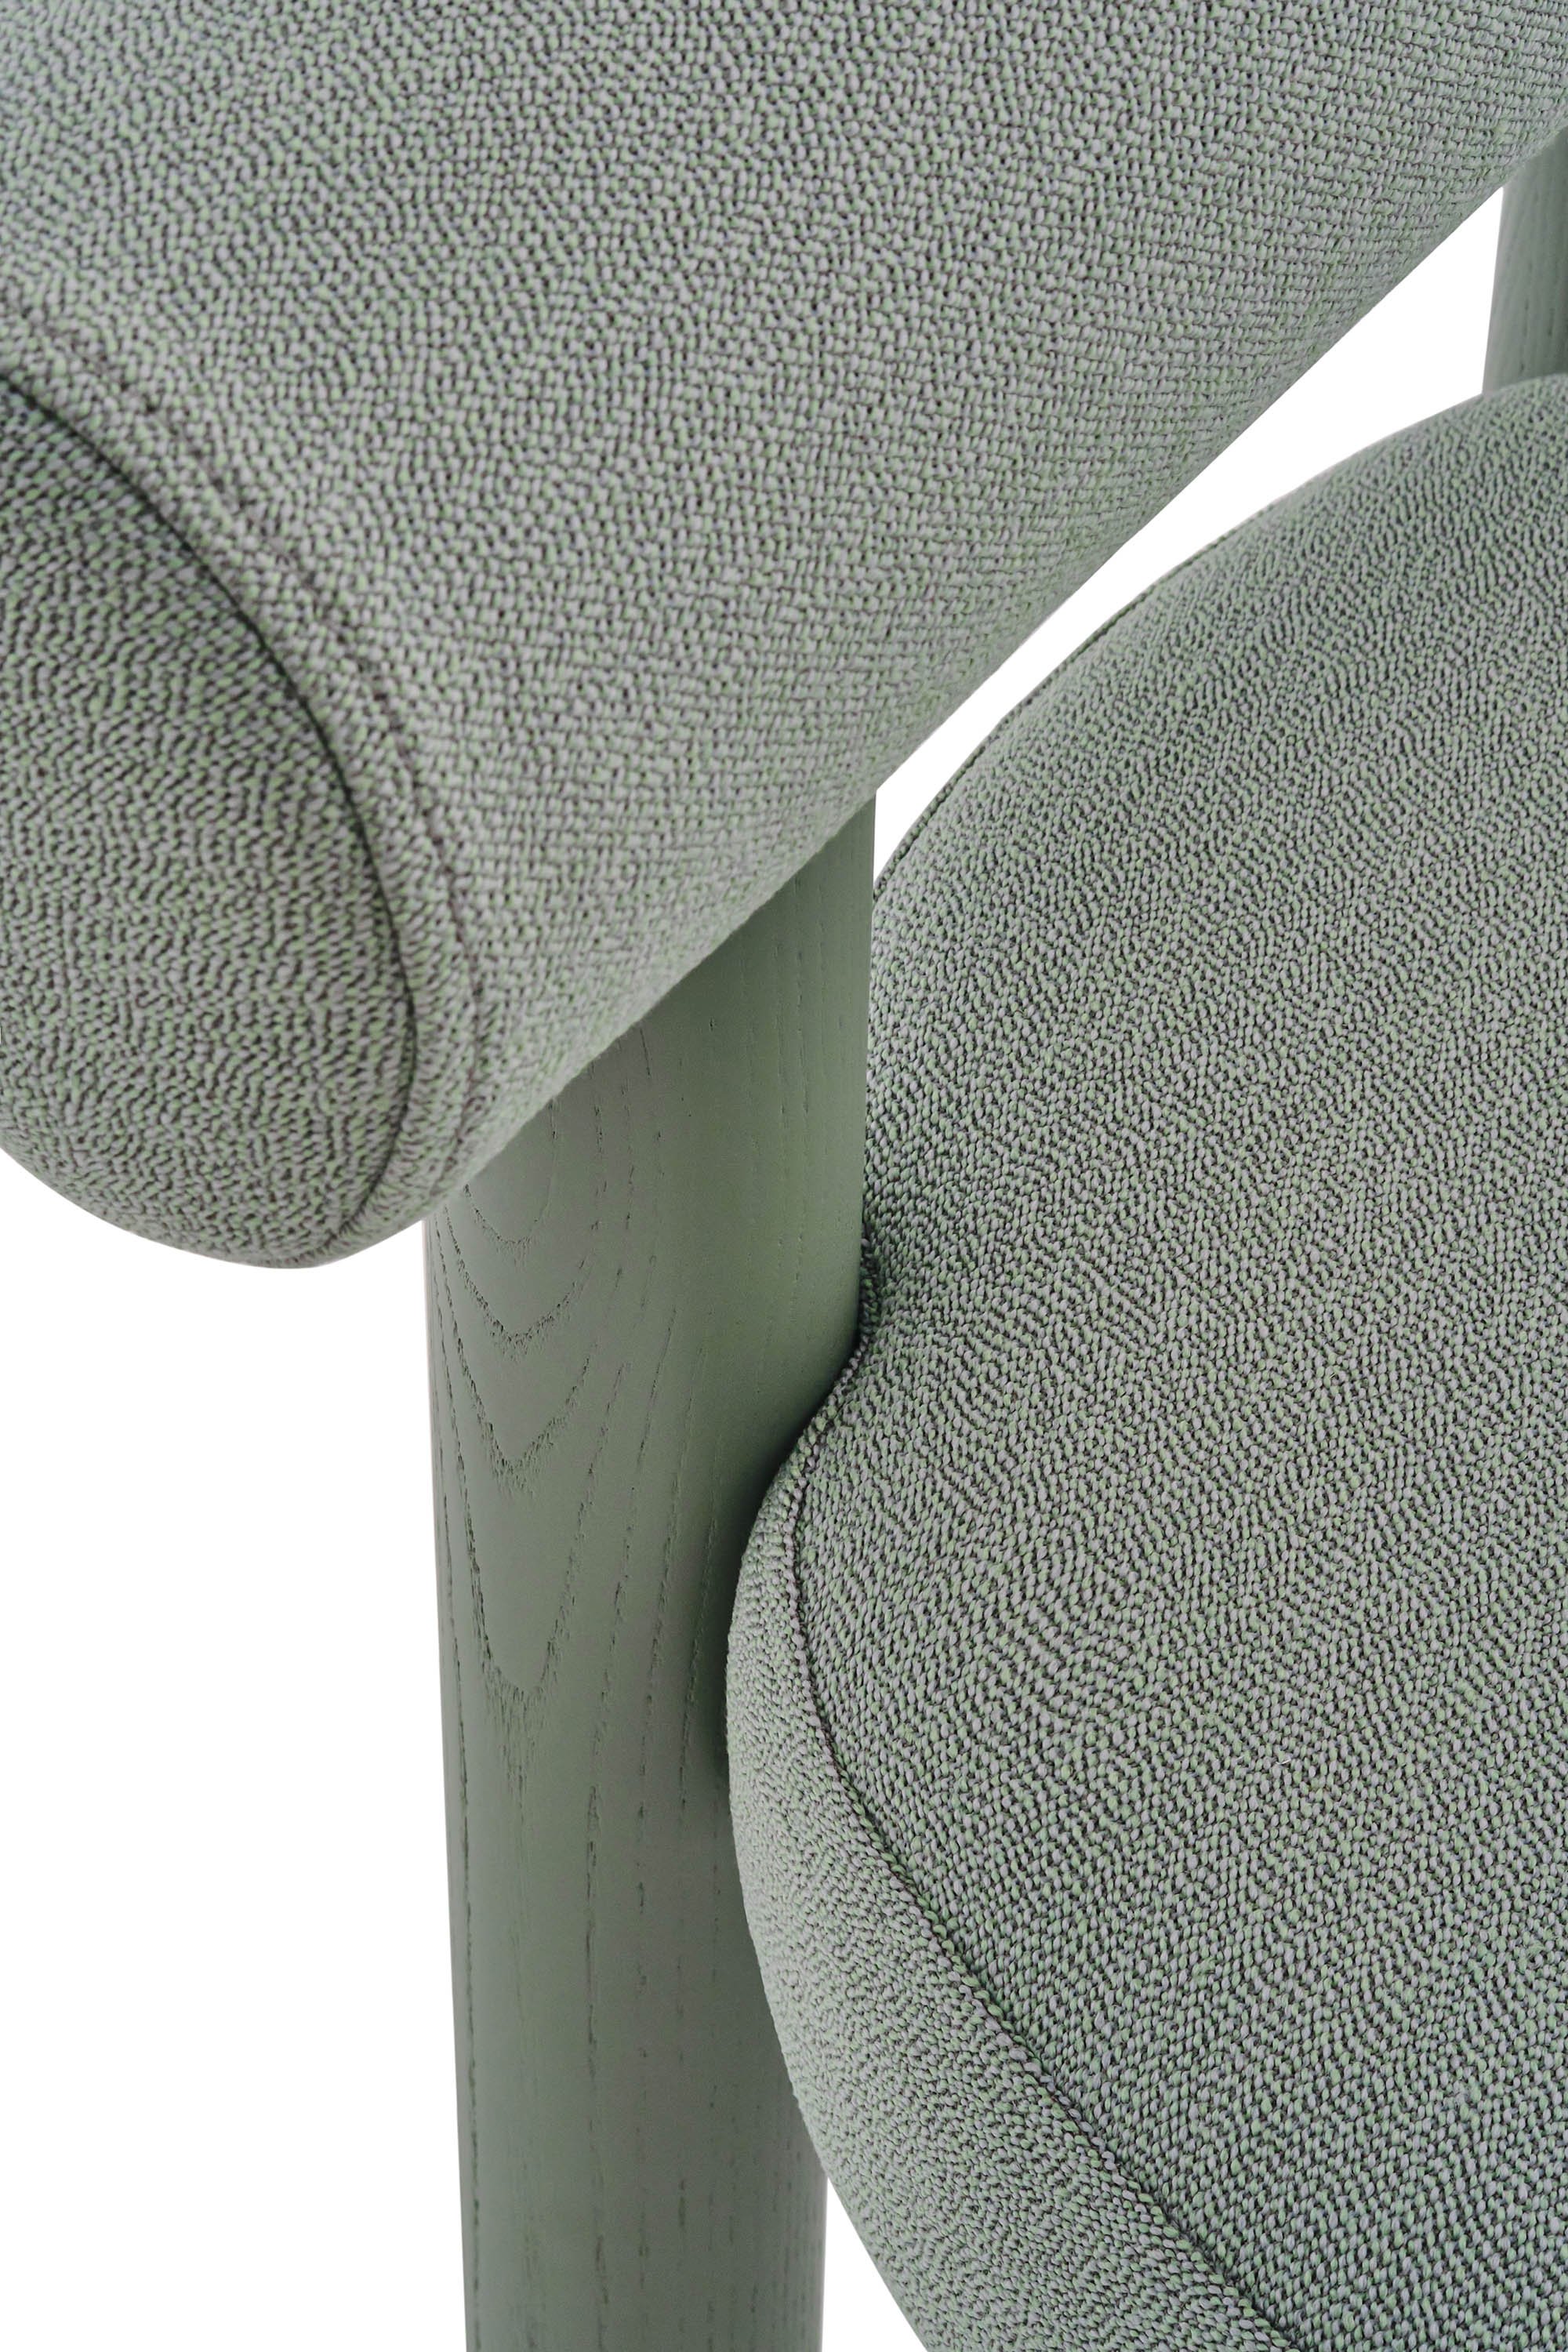 Gropius Chair in Rohi Arco fabrics (6).jpg